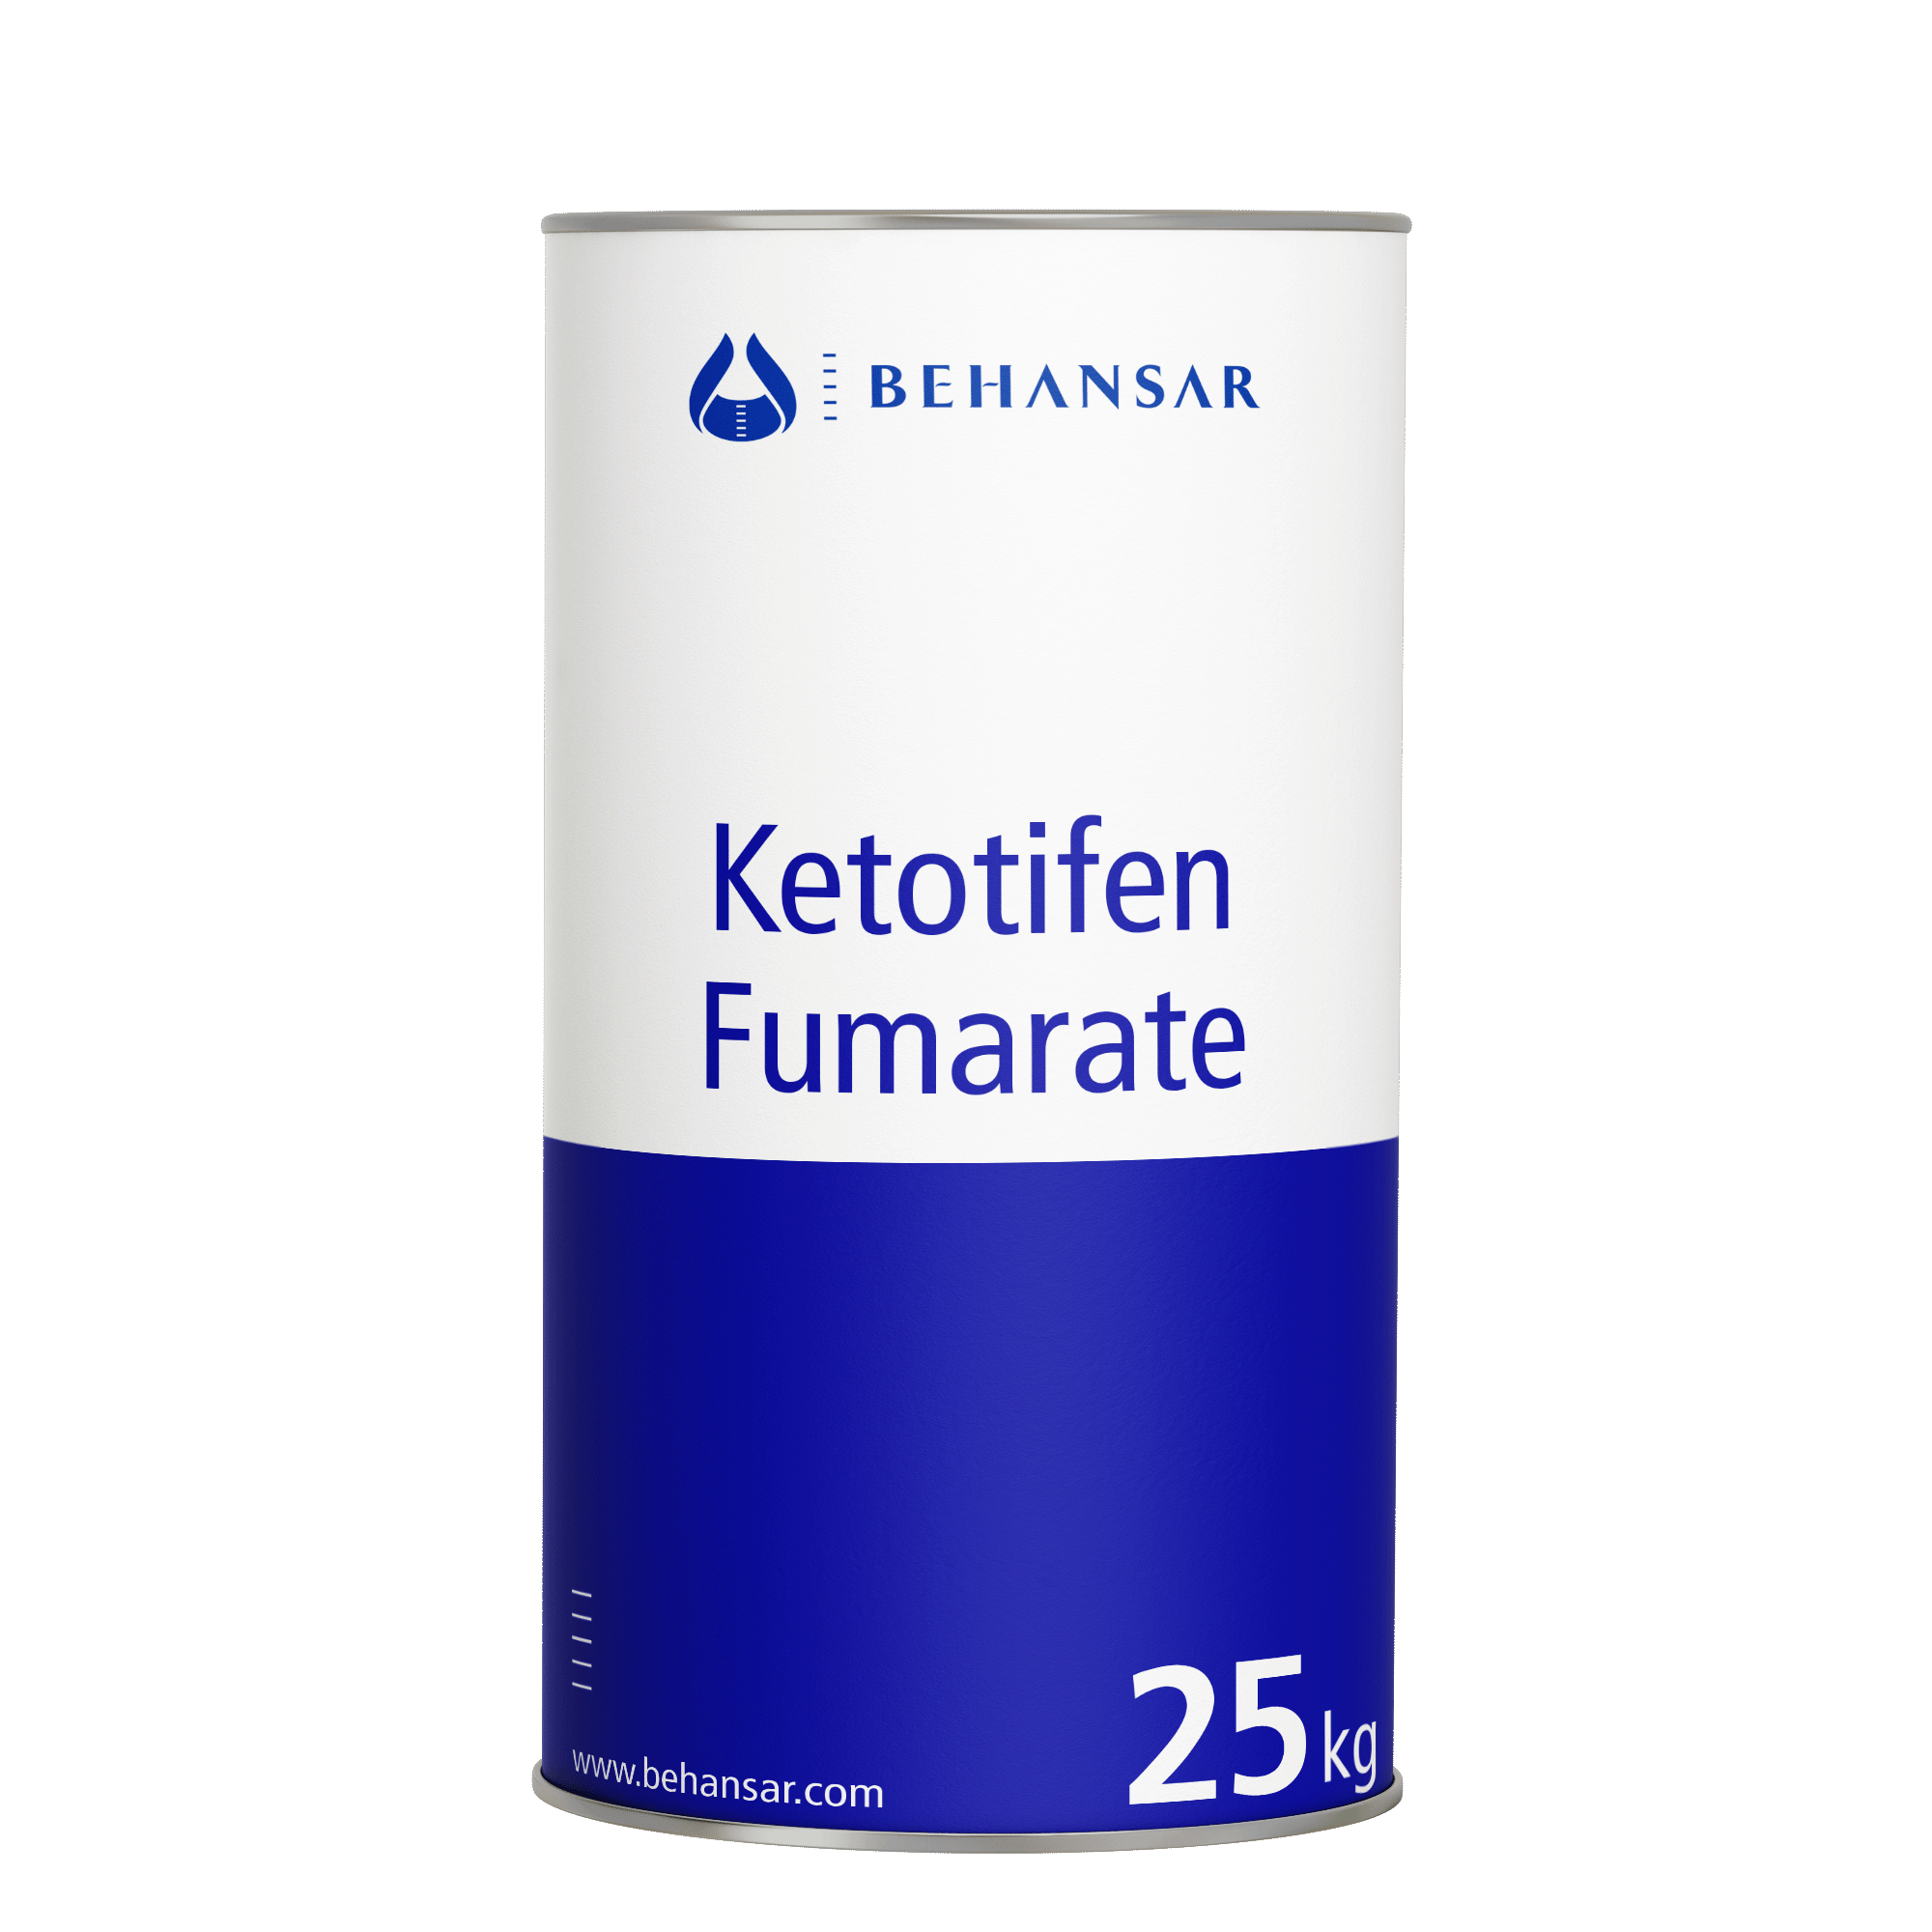 کتوتیفن فومارات یکی از تولیدات شرکت بهانسار است